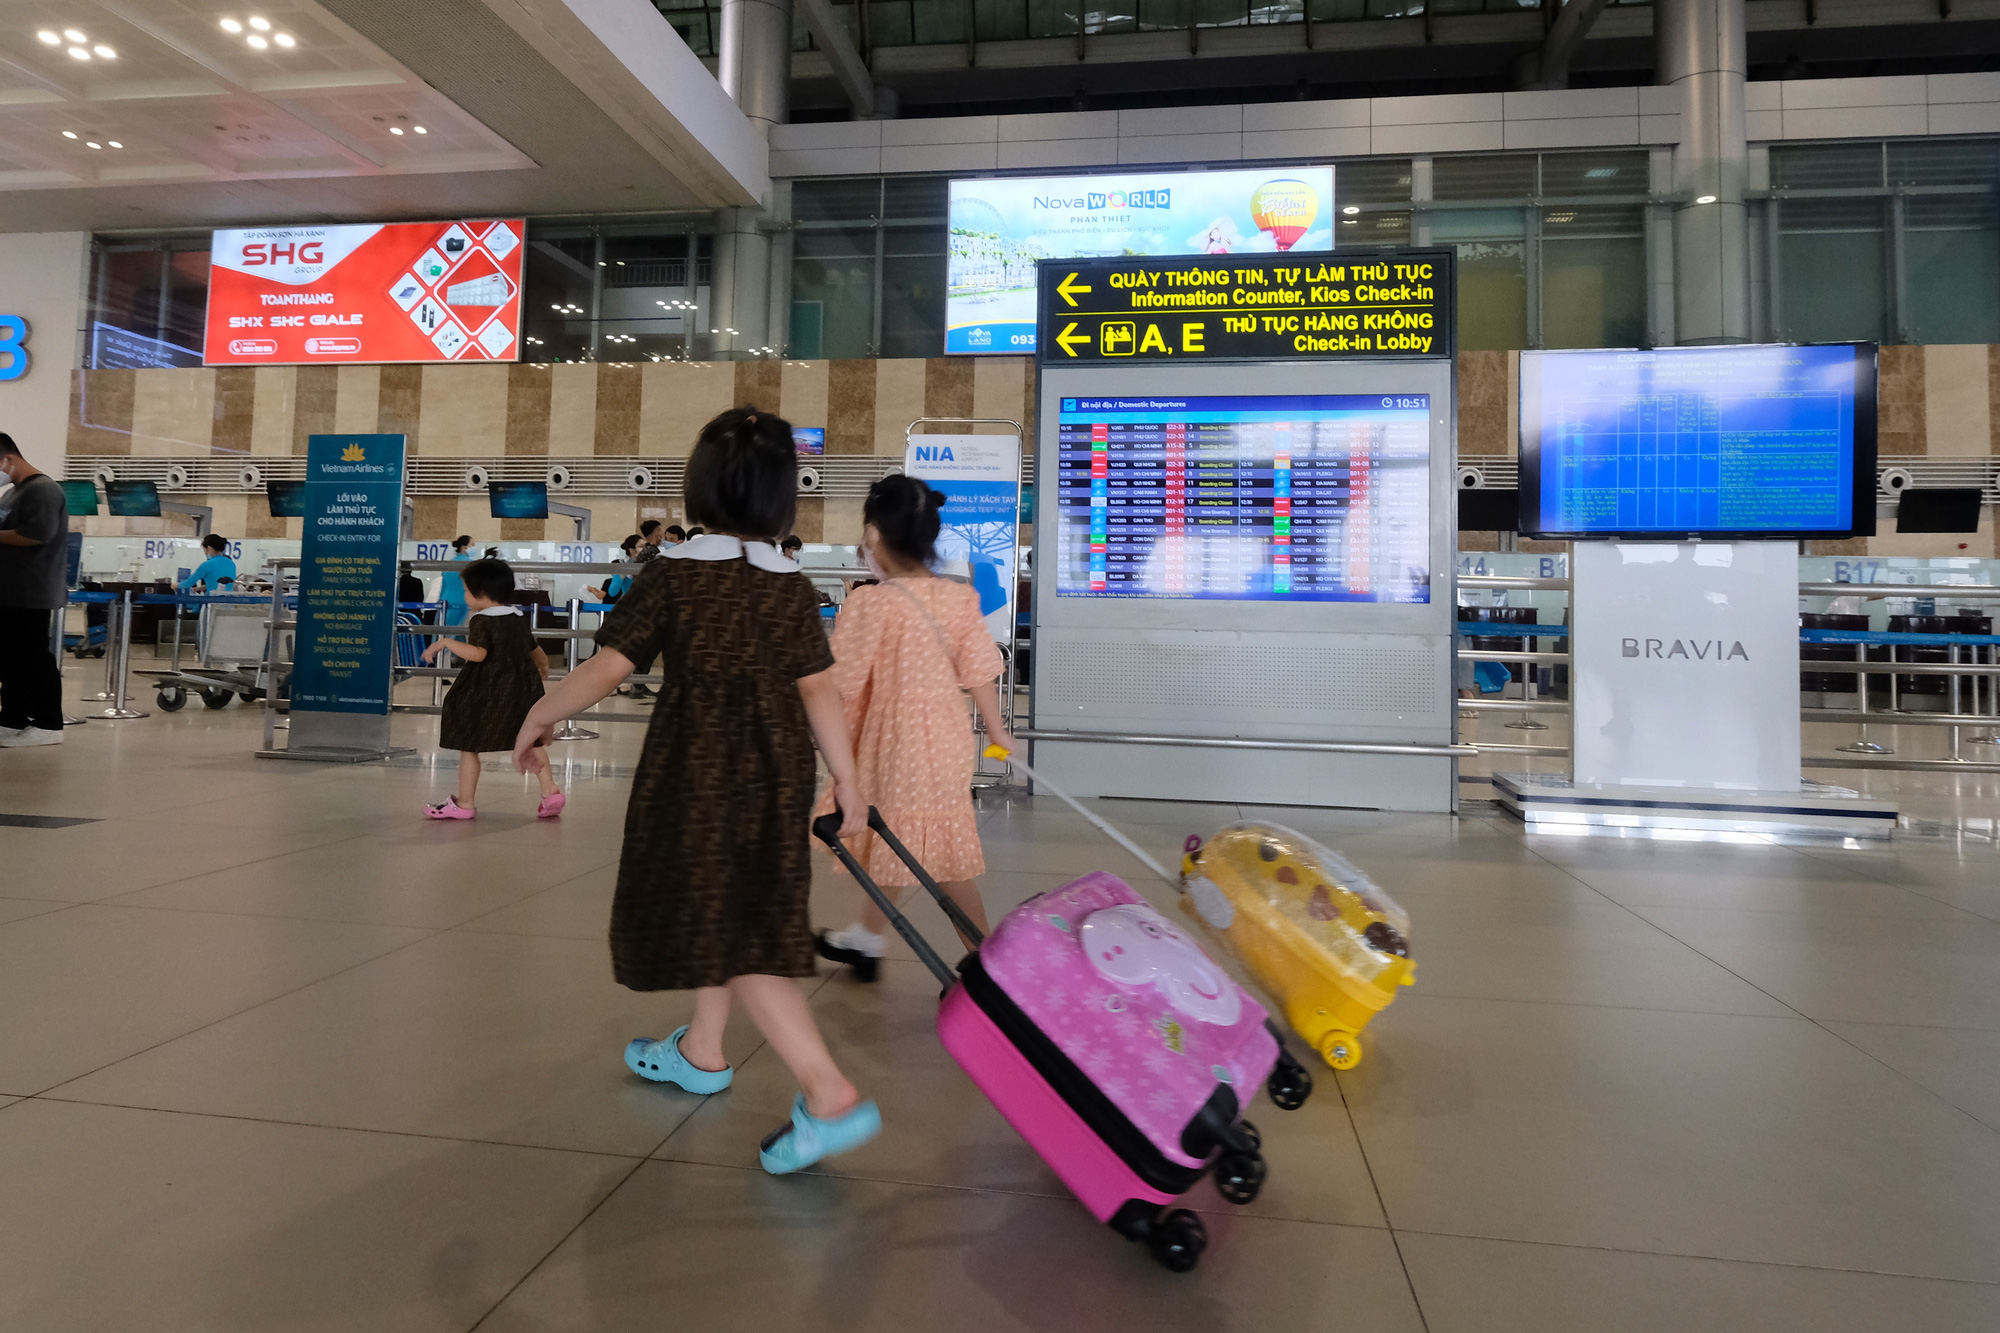 Sân bay Nội Bài đông đúc trước ngày nghỉ lễ, người người nhà nhà đi lu lịch sau tròn 1 năm làn sóng dịch lần thứ 4 - Ảnh 8.